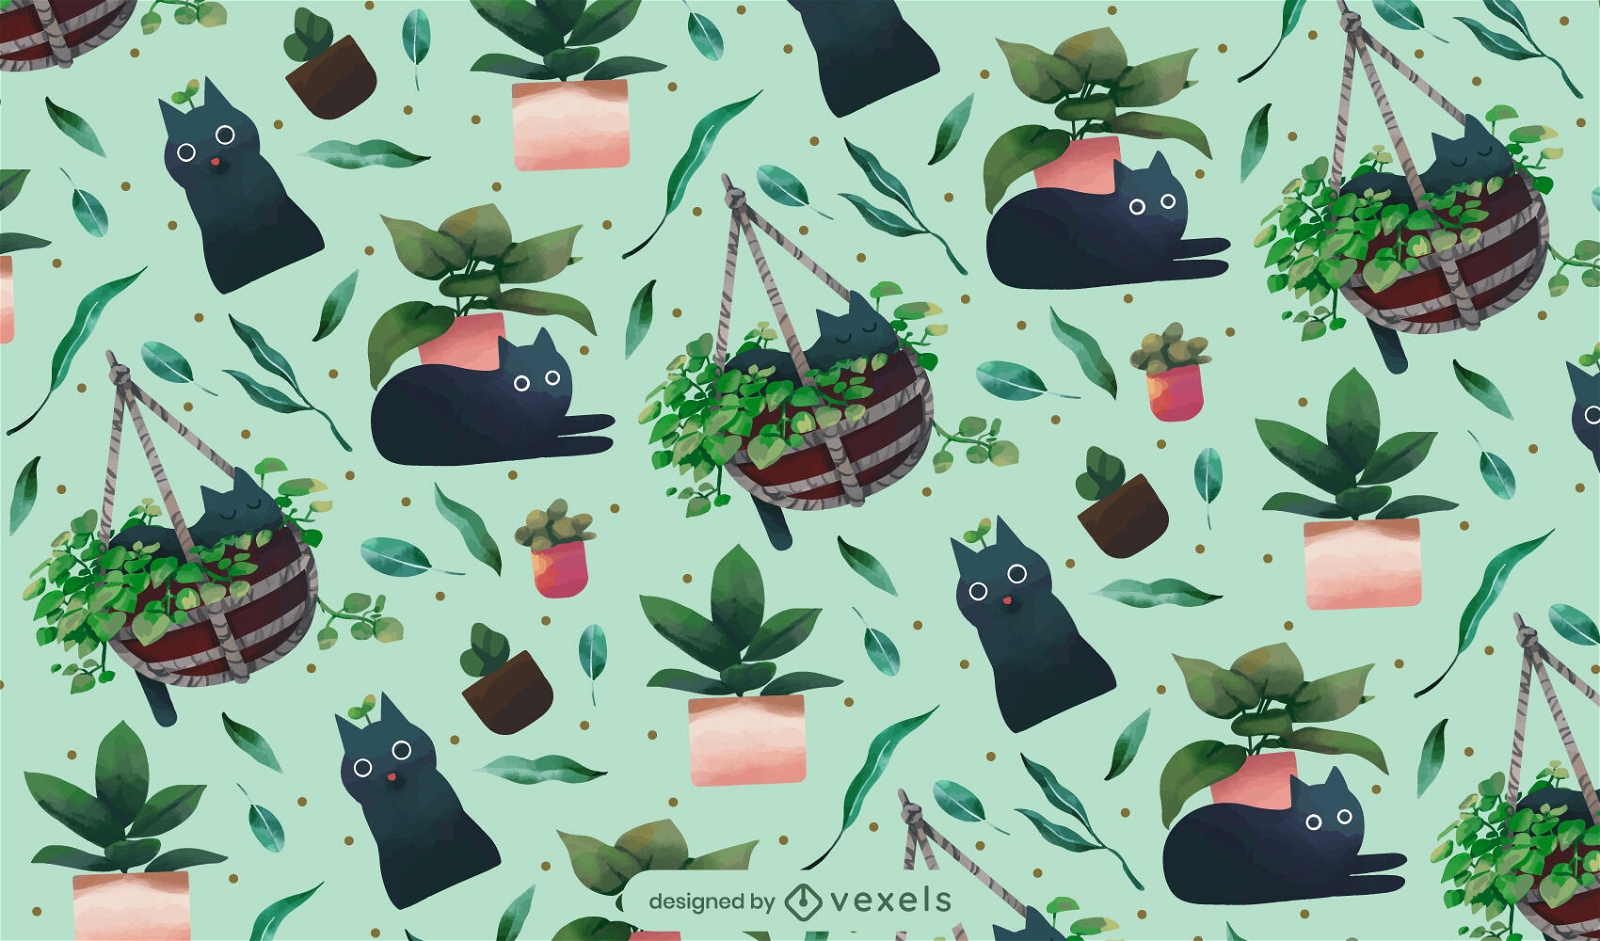 Diseño de patrones de gatos y plantas.